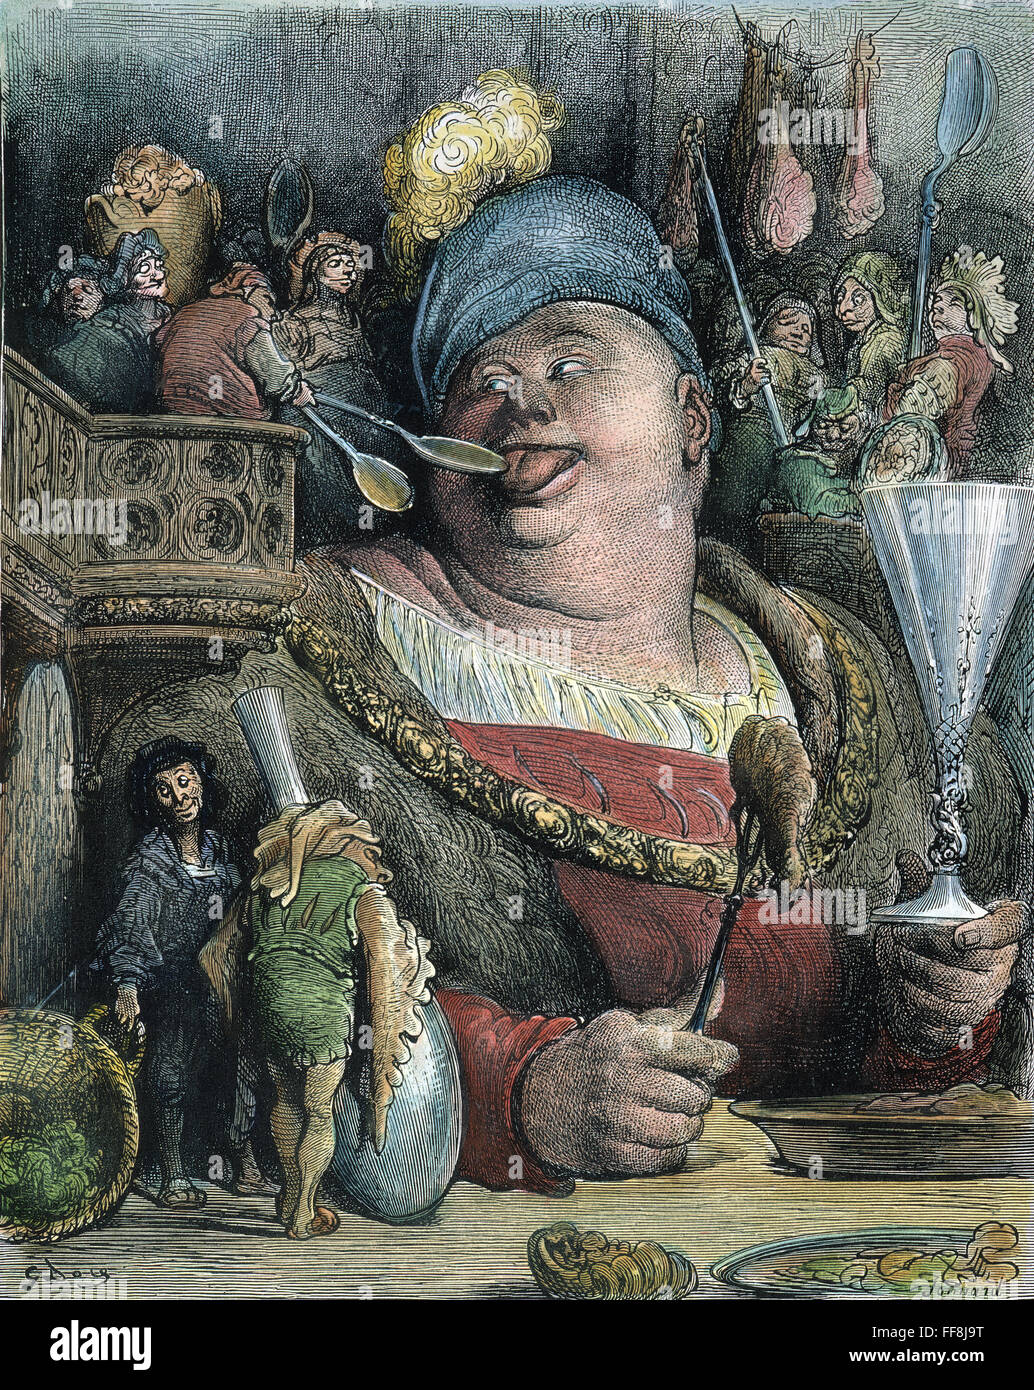 RABELAIS : GARGANTUA, 1873. Le Gargantua nAt /repas parisien, quatre hommes moutarde pelle dans sa bouche. La gravure sur bois, 1873, après Gustave DorΘ pour "Gargantua et Pantagruel" par Franτois Rabelais. Banque D'Images